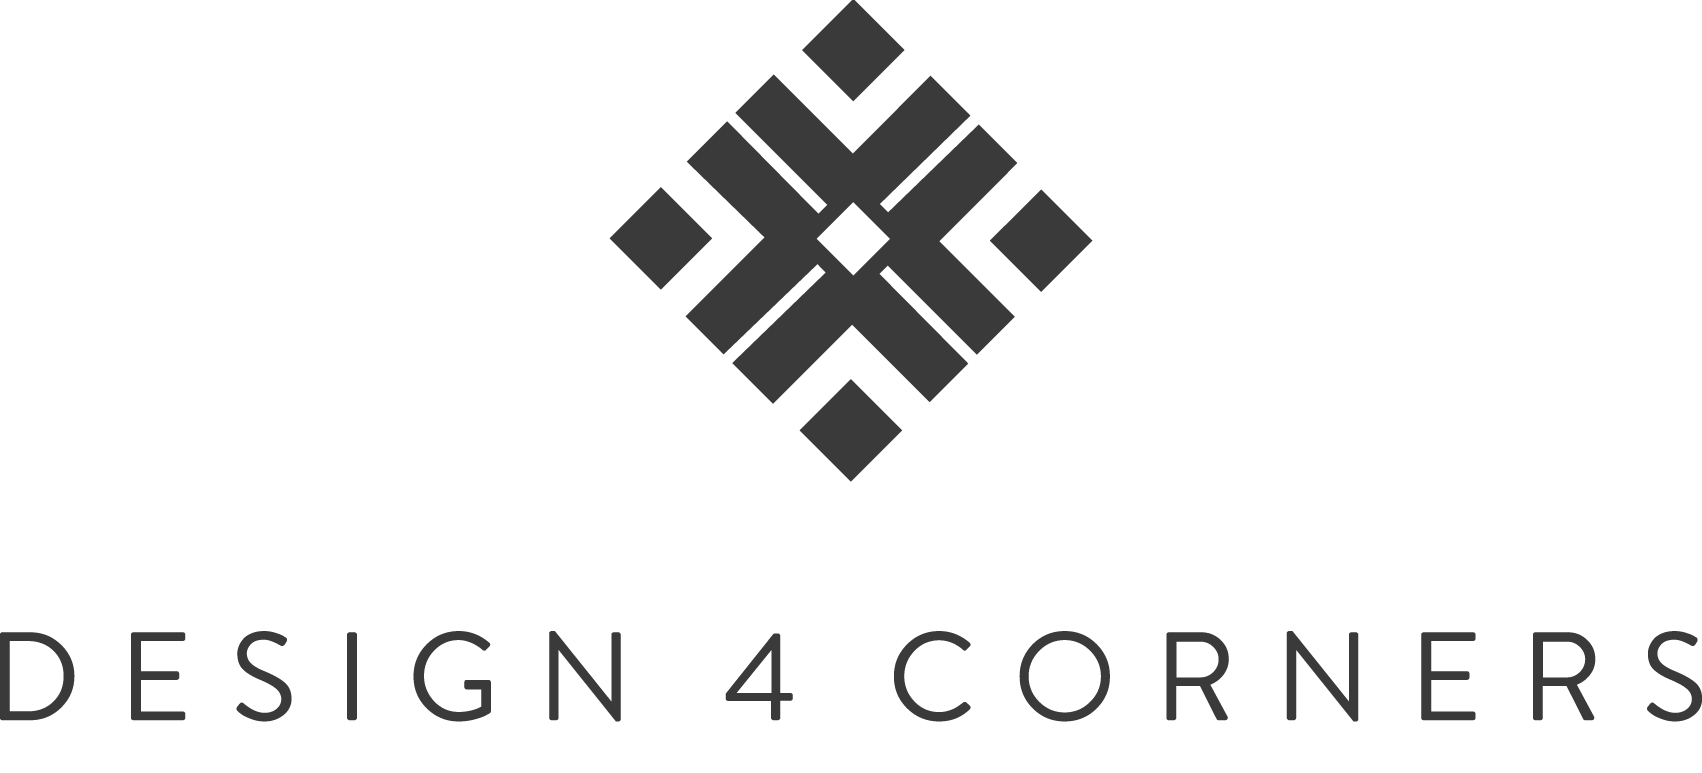 Design 4 Corners